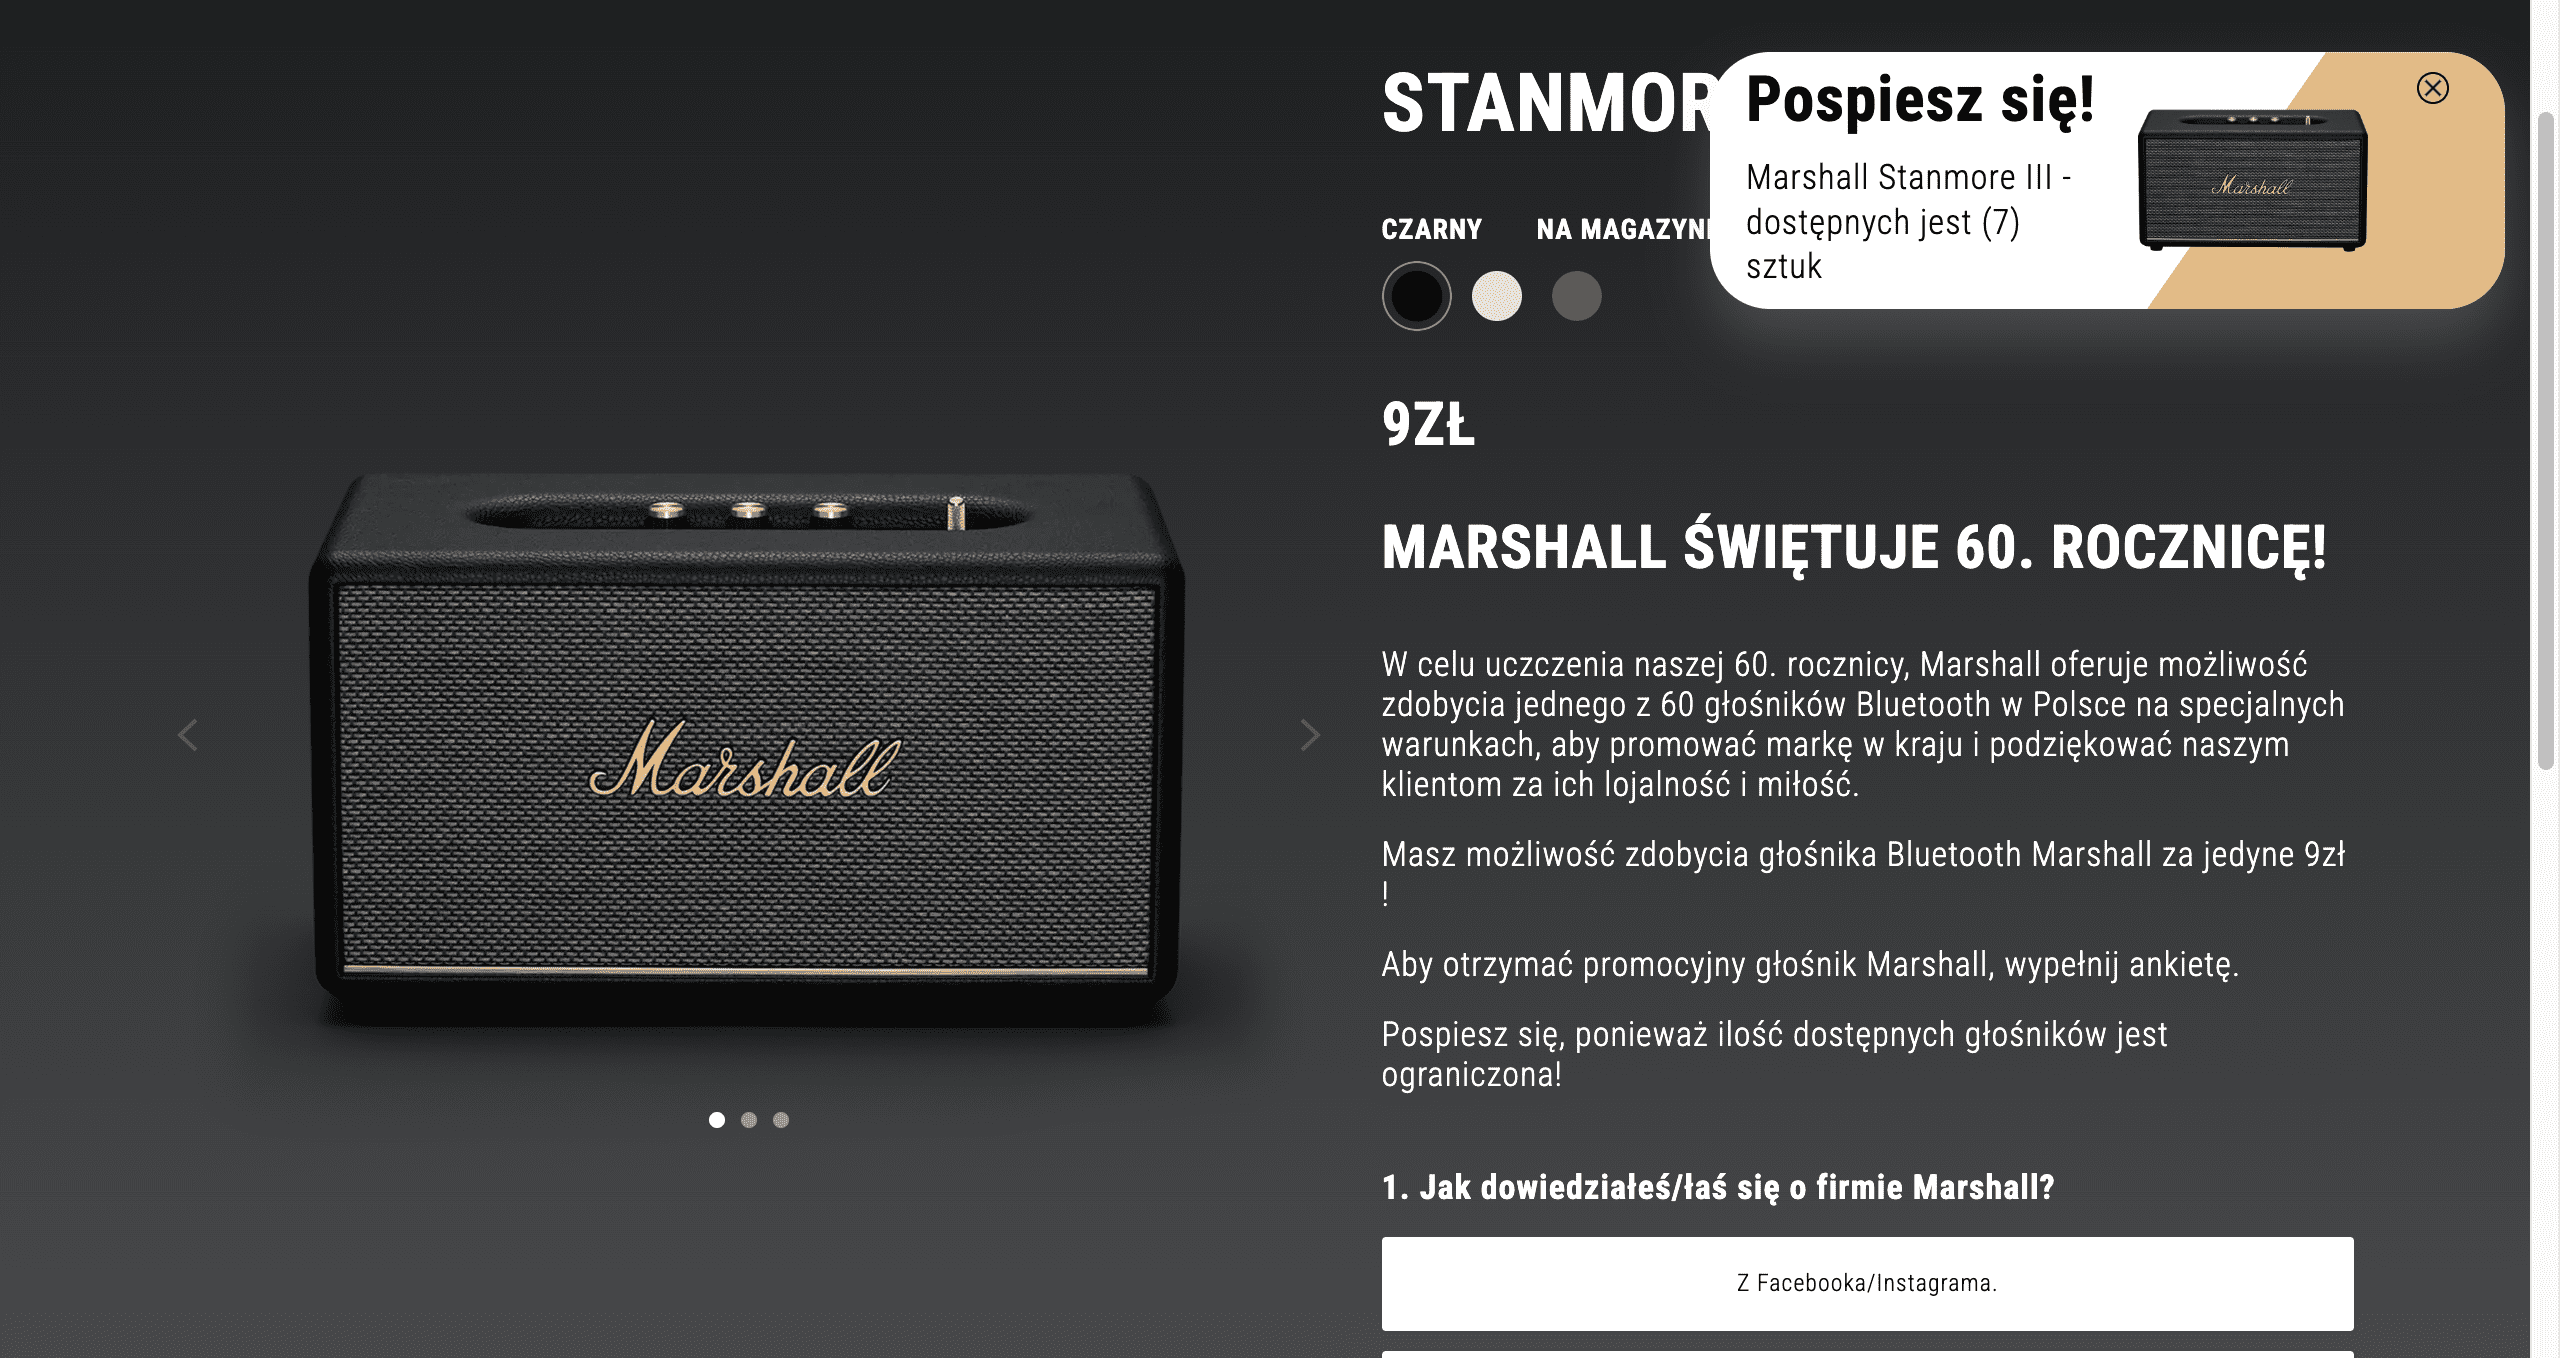 Zrzut ekranu strony z „wnioskiem" o dostarczenie głośnika. Widać na niej czarny głośnik firmy Marshall na czarnym tle.